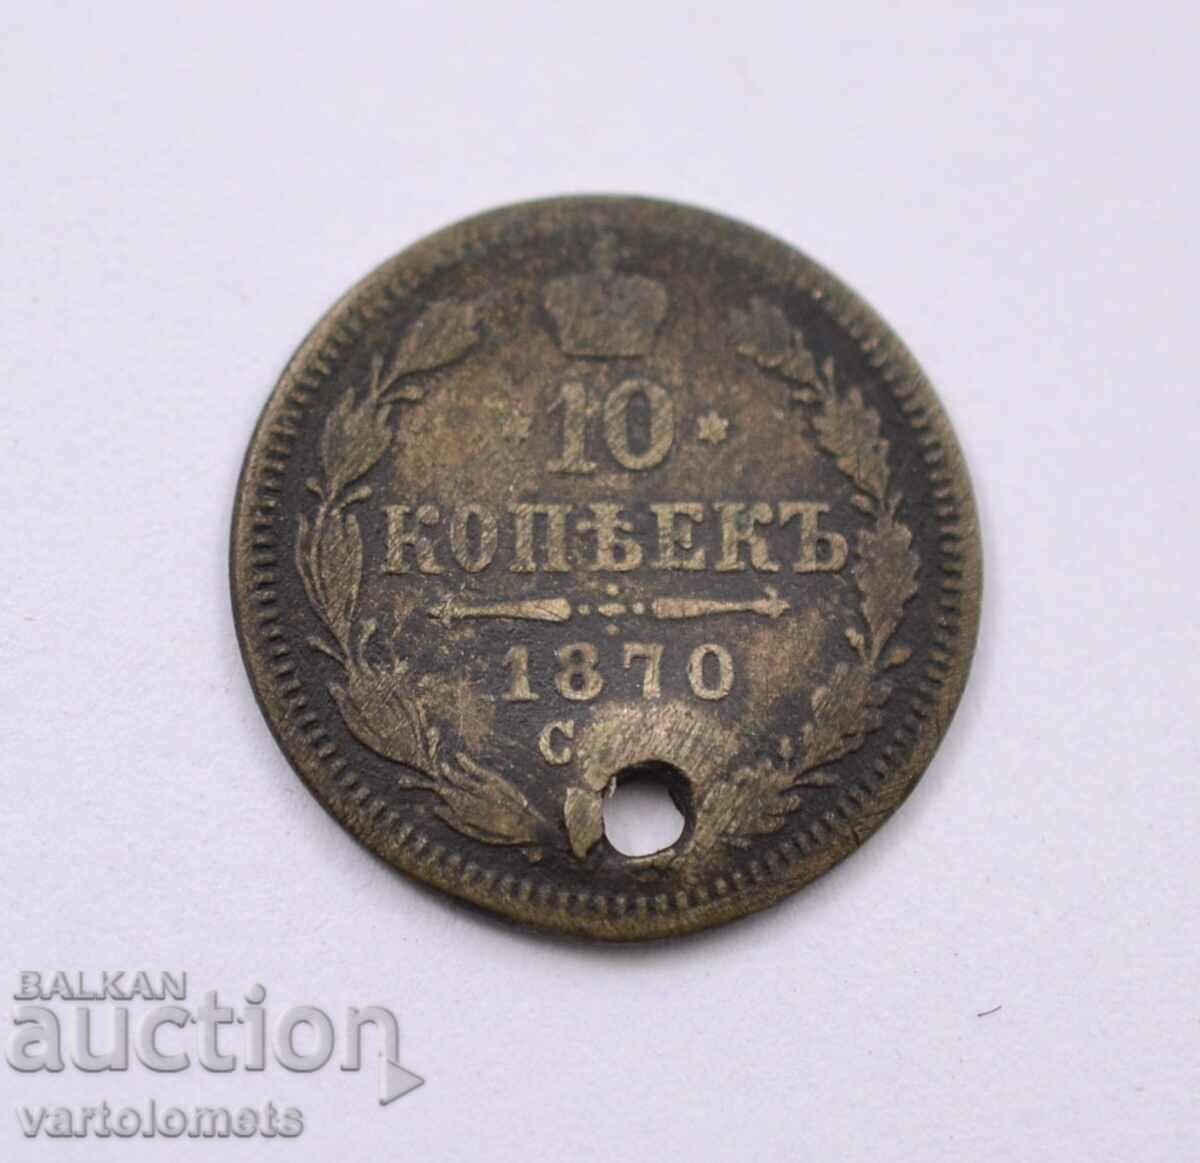 10 kopecks 1870, silver - Russia